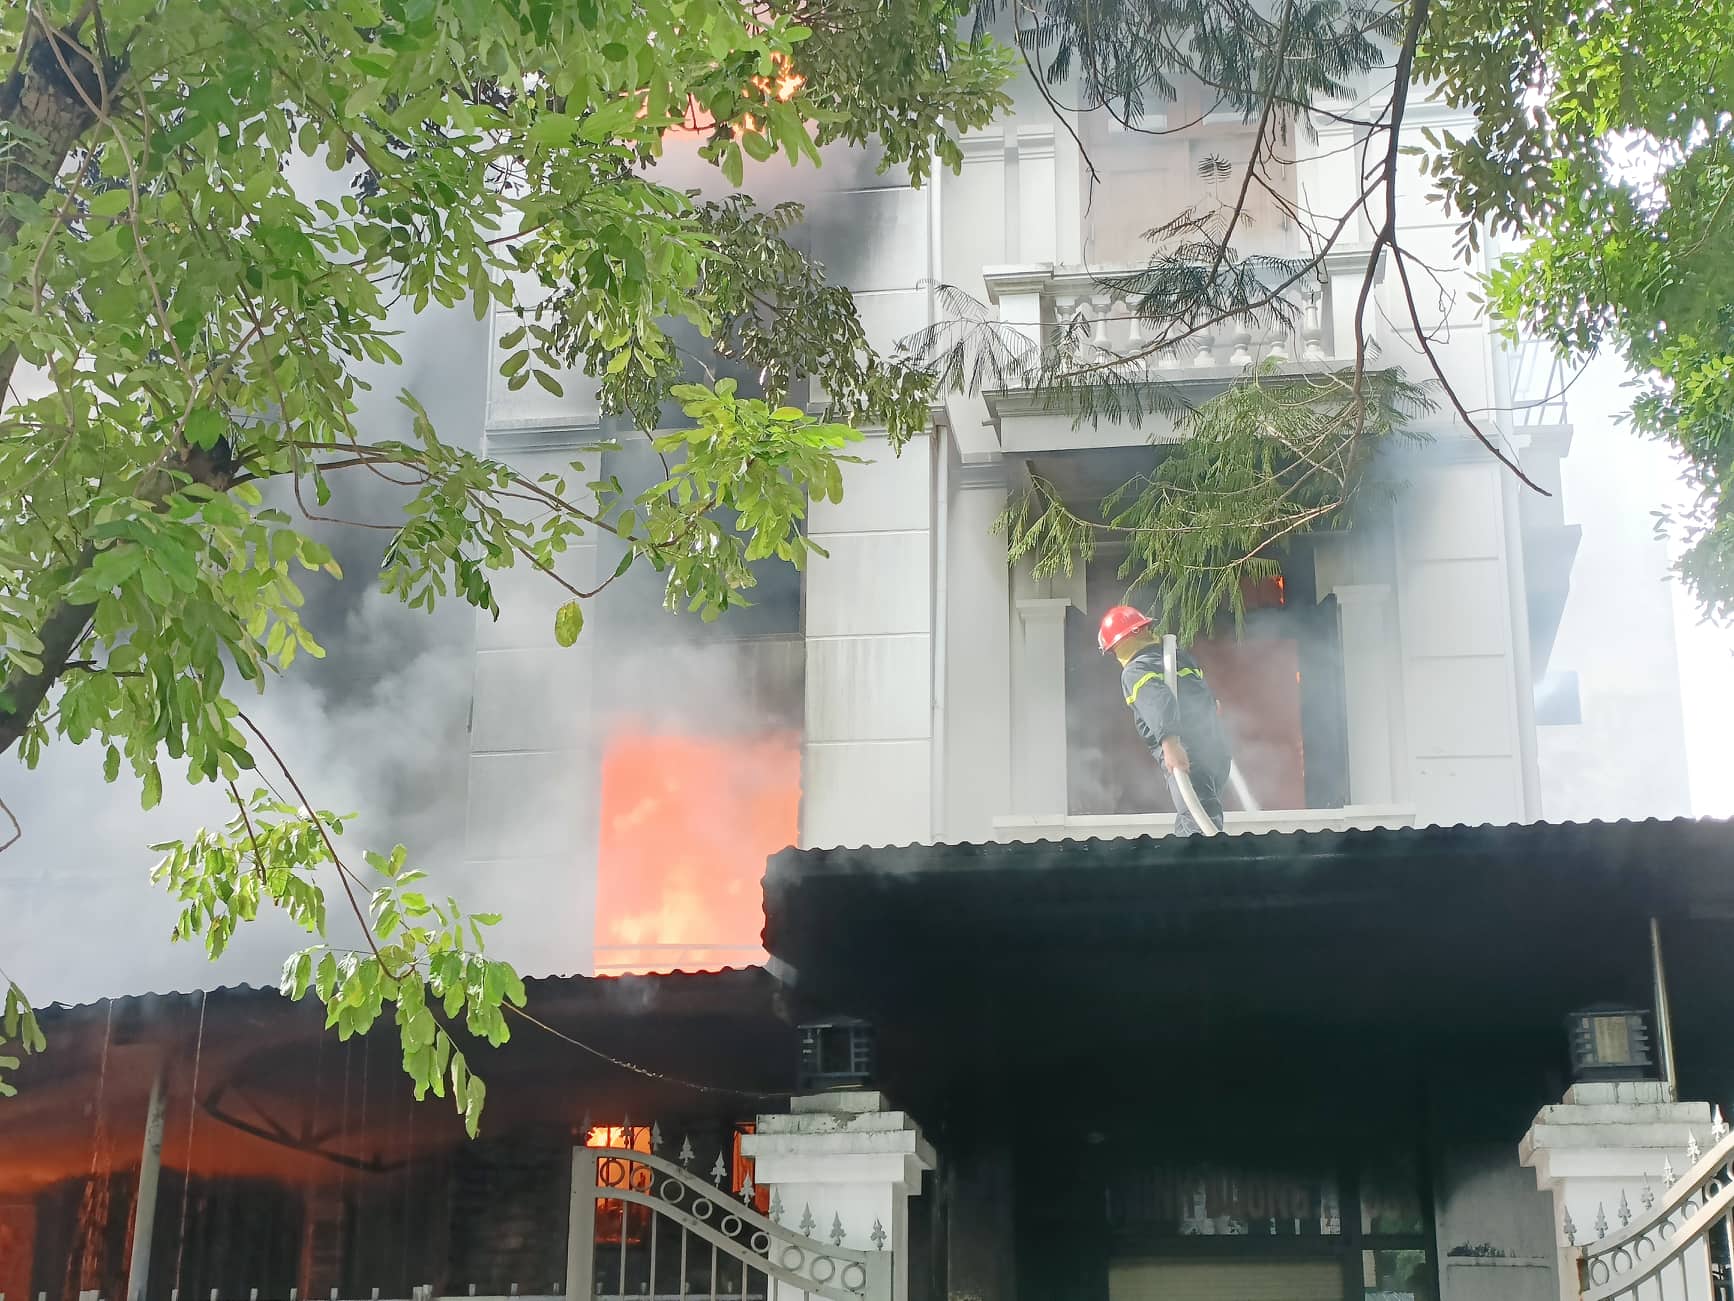 Đang cháy lớn tại xưởng nhựa ở Khu đô thị Pháp Vân, Hà Nội - Ảnh 3.